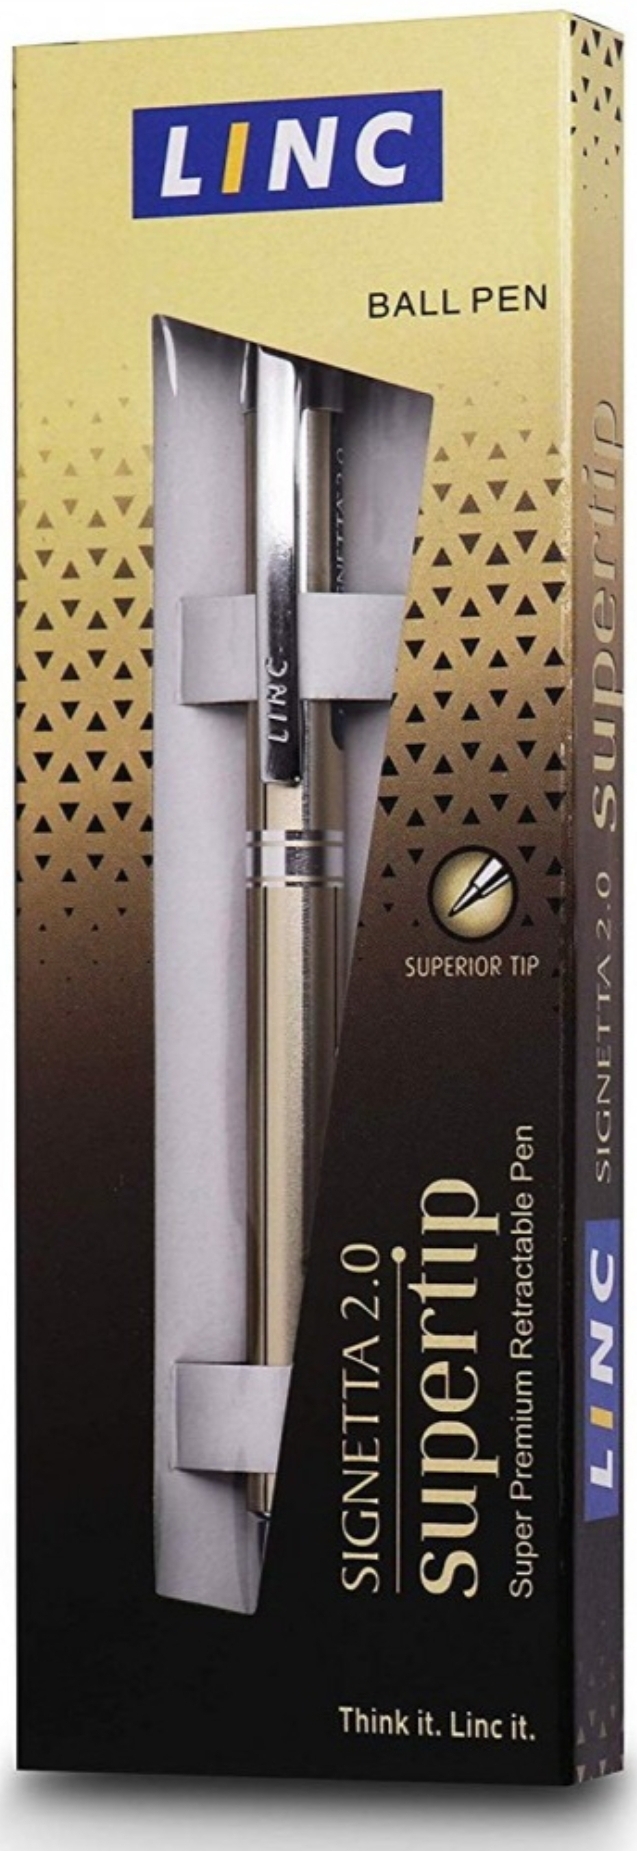 Linc Signetta 2.0 Supertip Ball Pen, (Pack of 1)